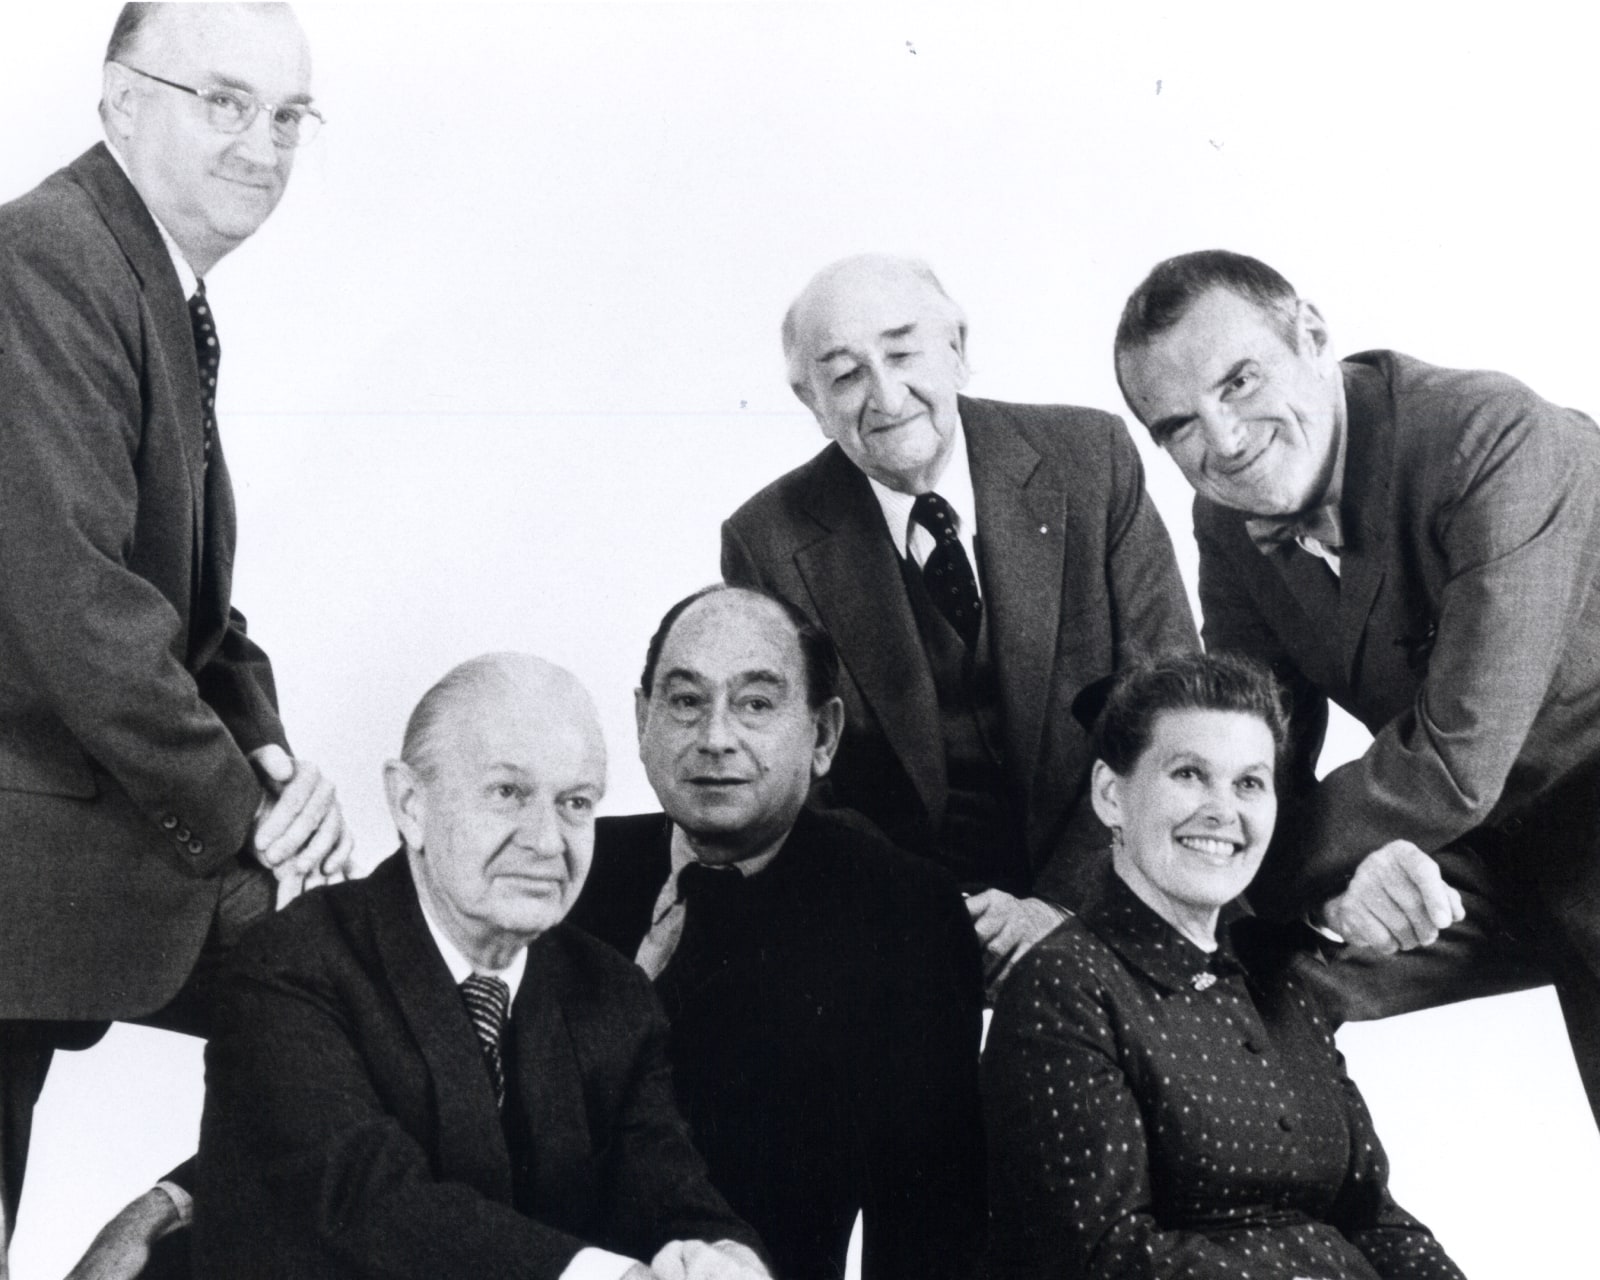 El fundador, D.J. De Pree, El director de diseño, George Nelson y los diseñadores Robert Propst, Alexander Girard, y Ray y Charles Eames.